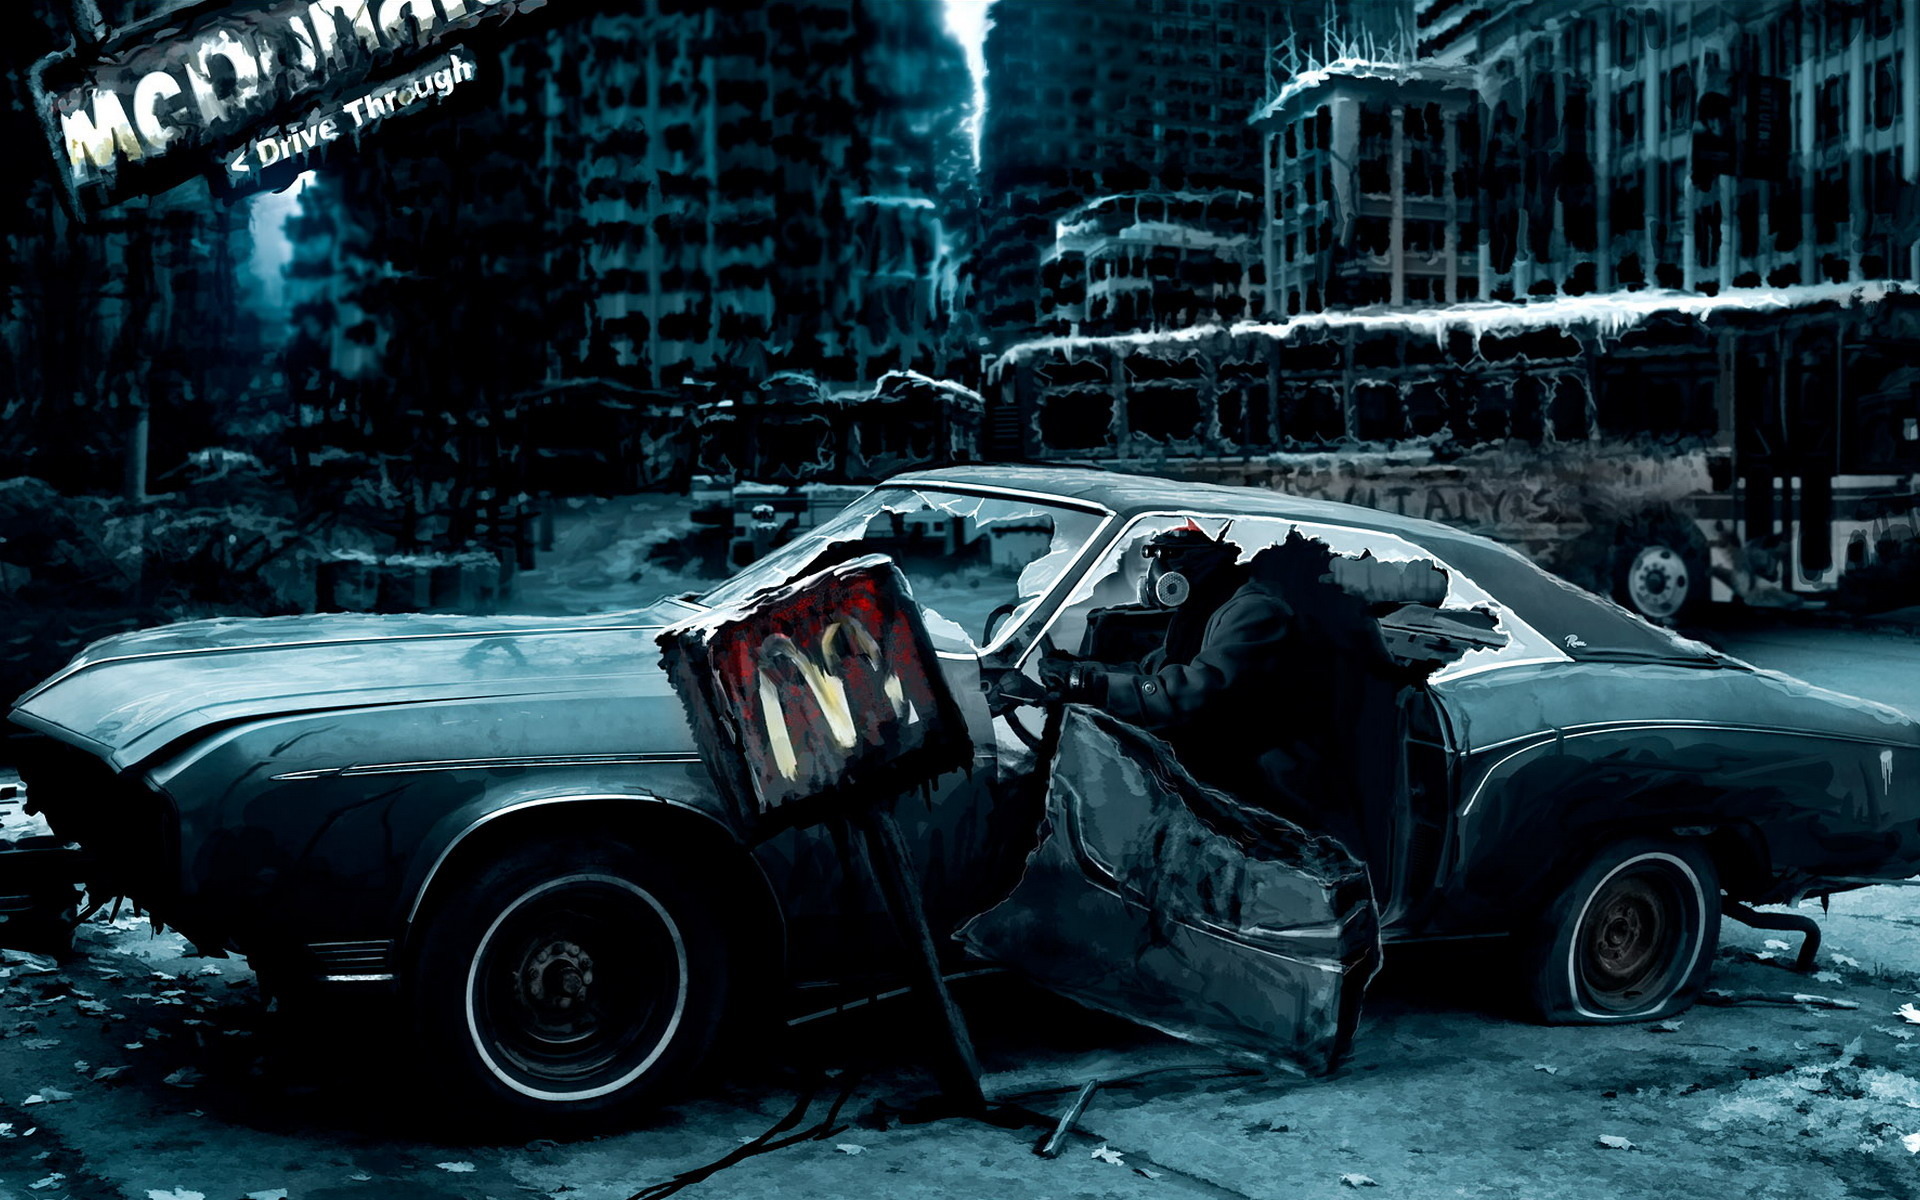 3d обои Постапокалиптический рисунок, разбитая машина, человек в противогазе, вывеска McDonalds drive througt  авто # 18804